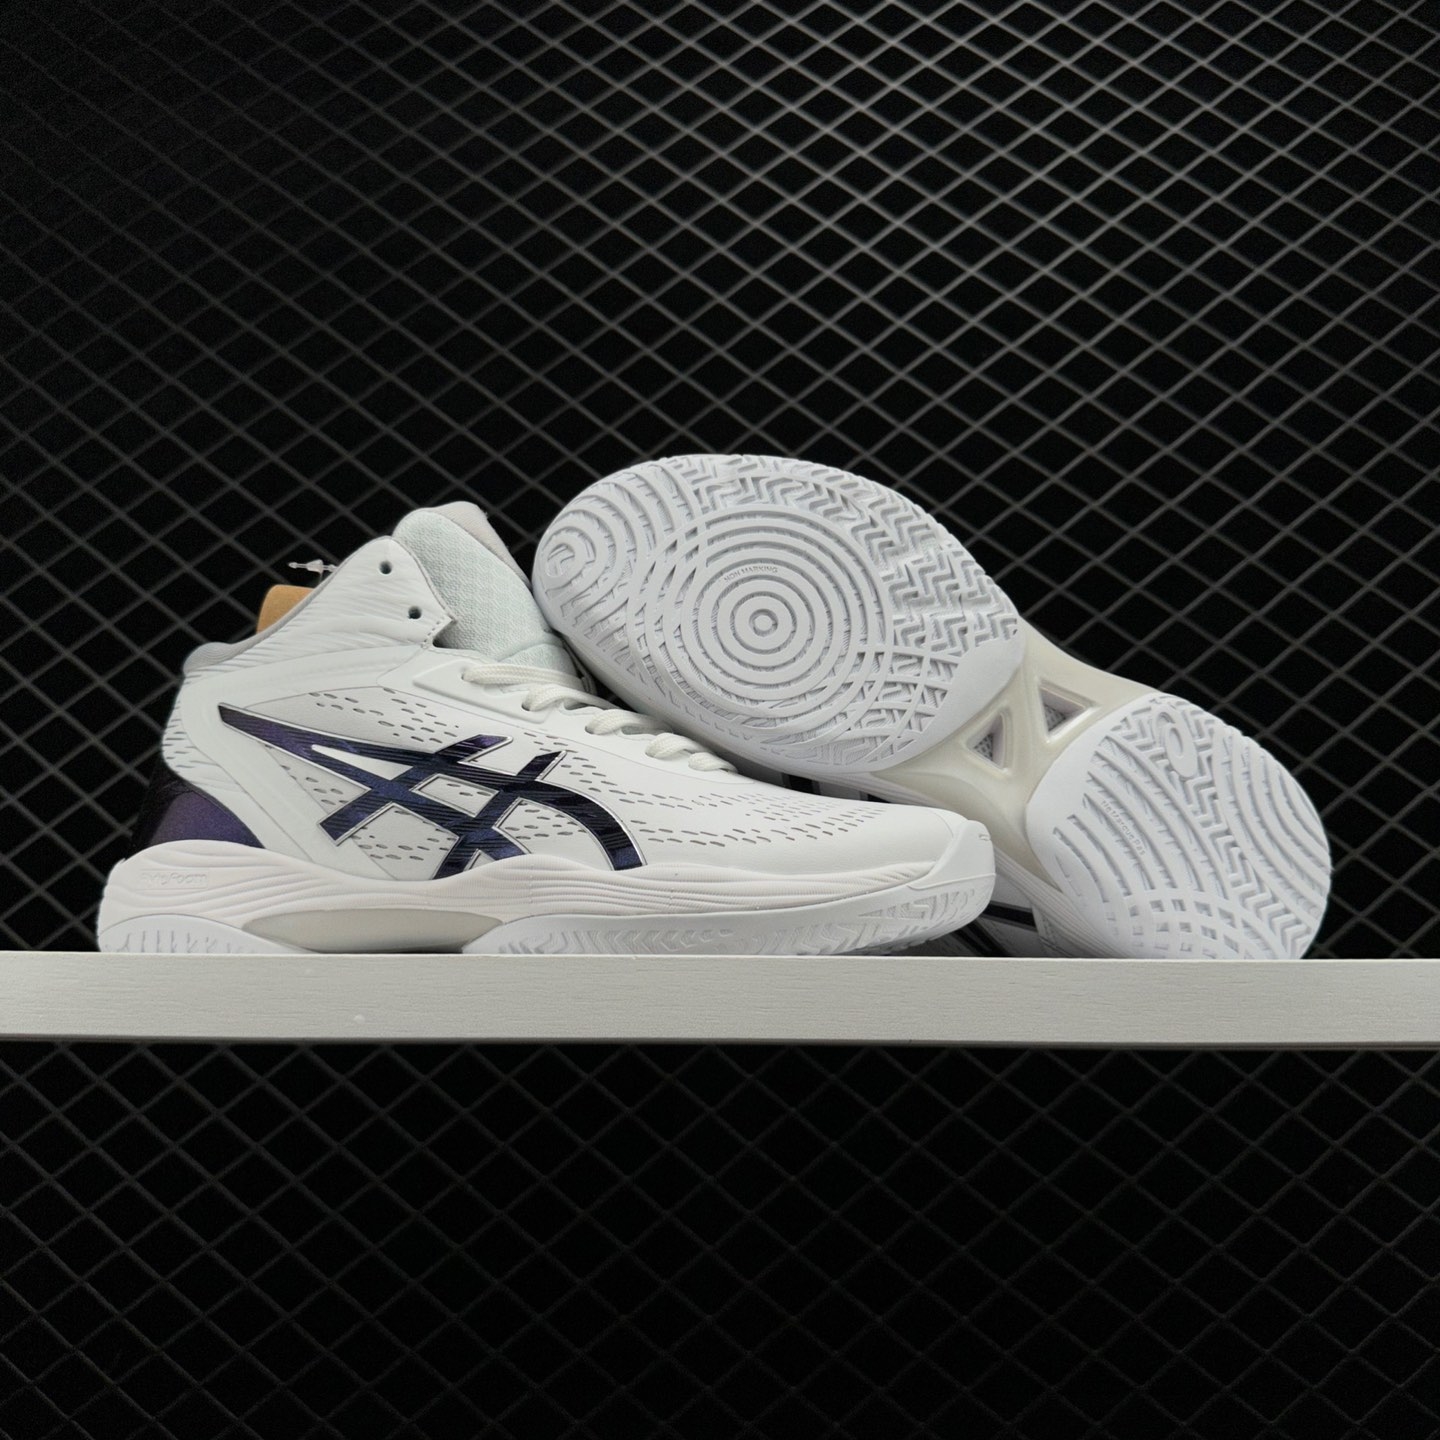 Asics GelHoop V14 'White Blue' - Premium Performance Basketball Shoes